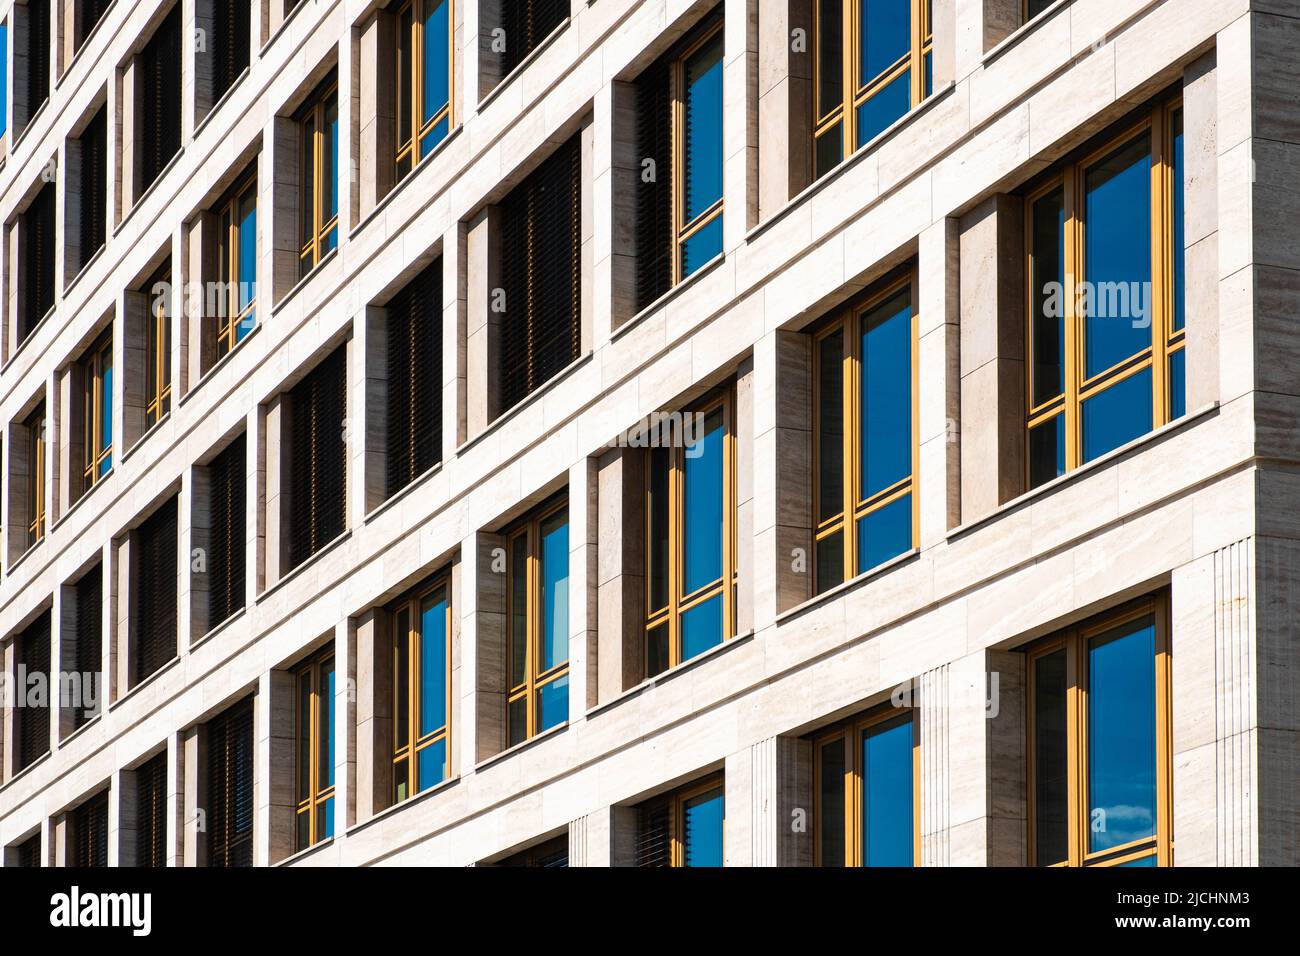 Fachada moderna de edificio de oficinas, exterior de bienes raíces Foto de stock